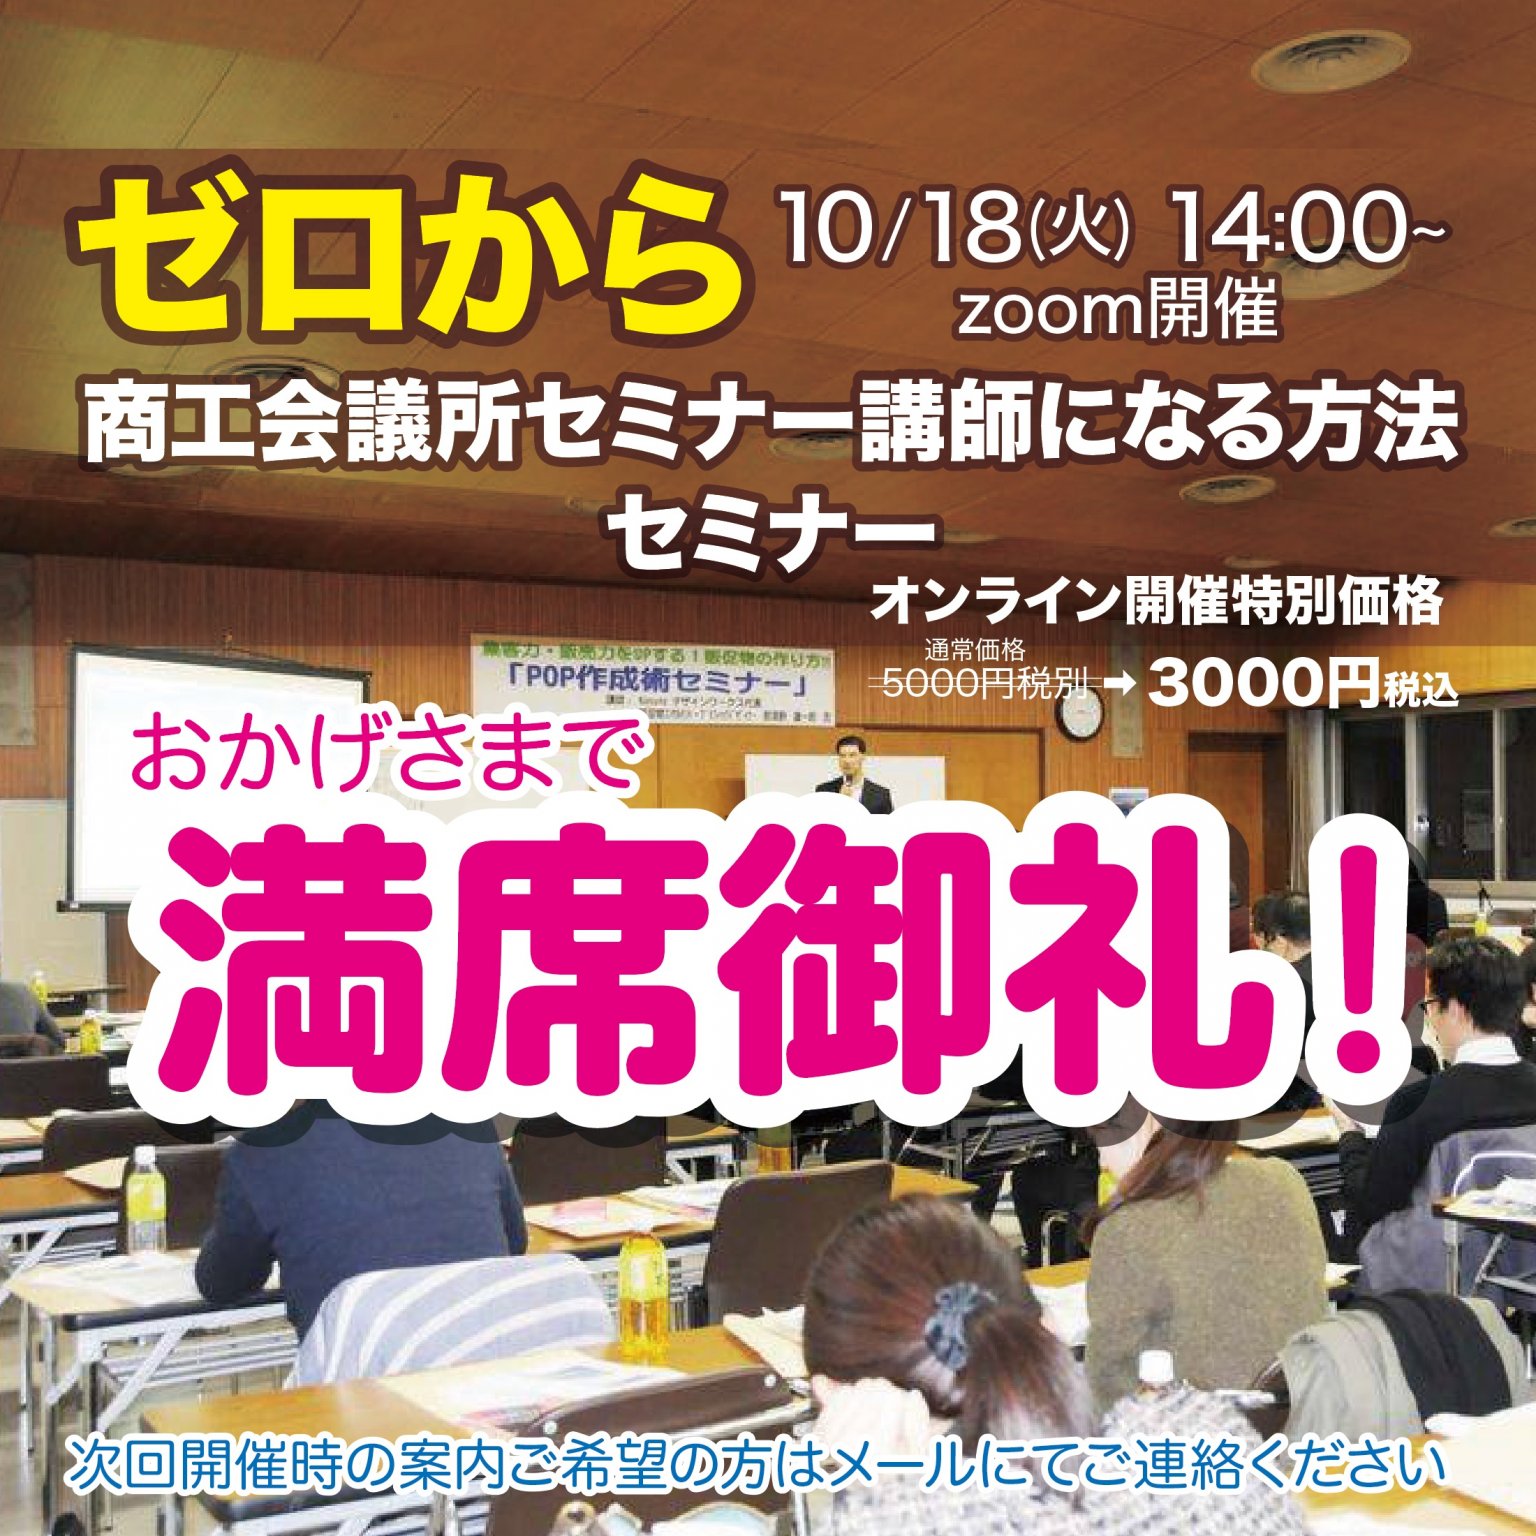 10/18(火) ゼロから商工会議所セミナー講師になる方法セミナー zoom